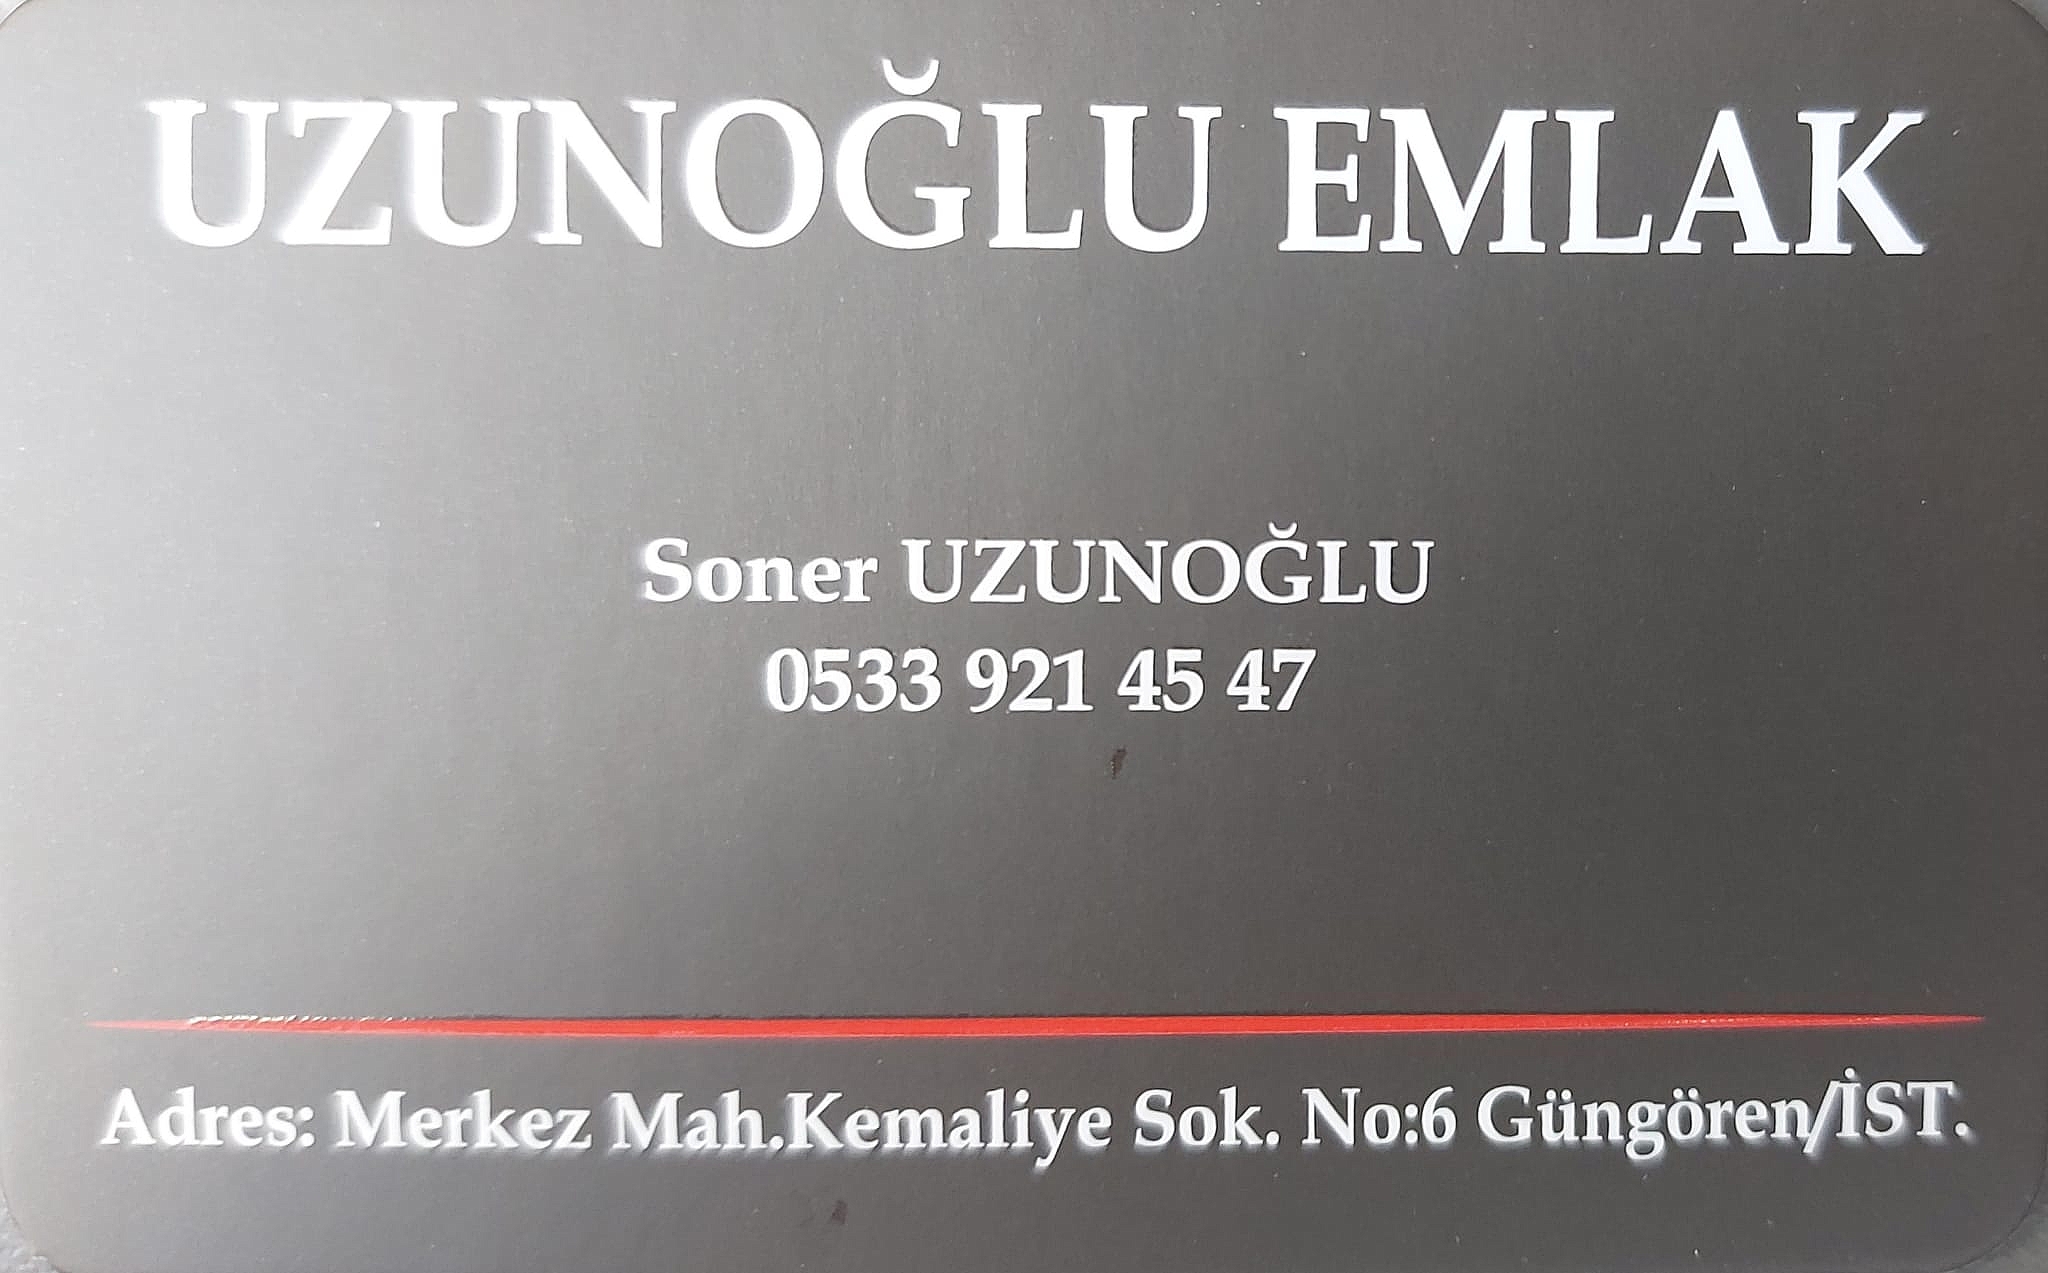 Uzunoğlu Emlak - 0533 921 45 47